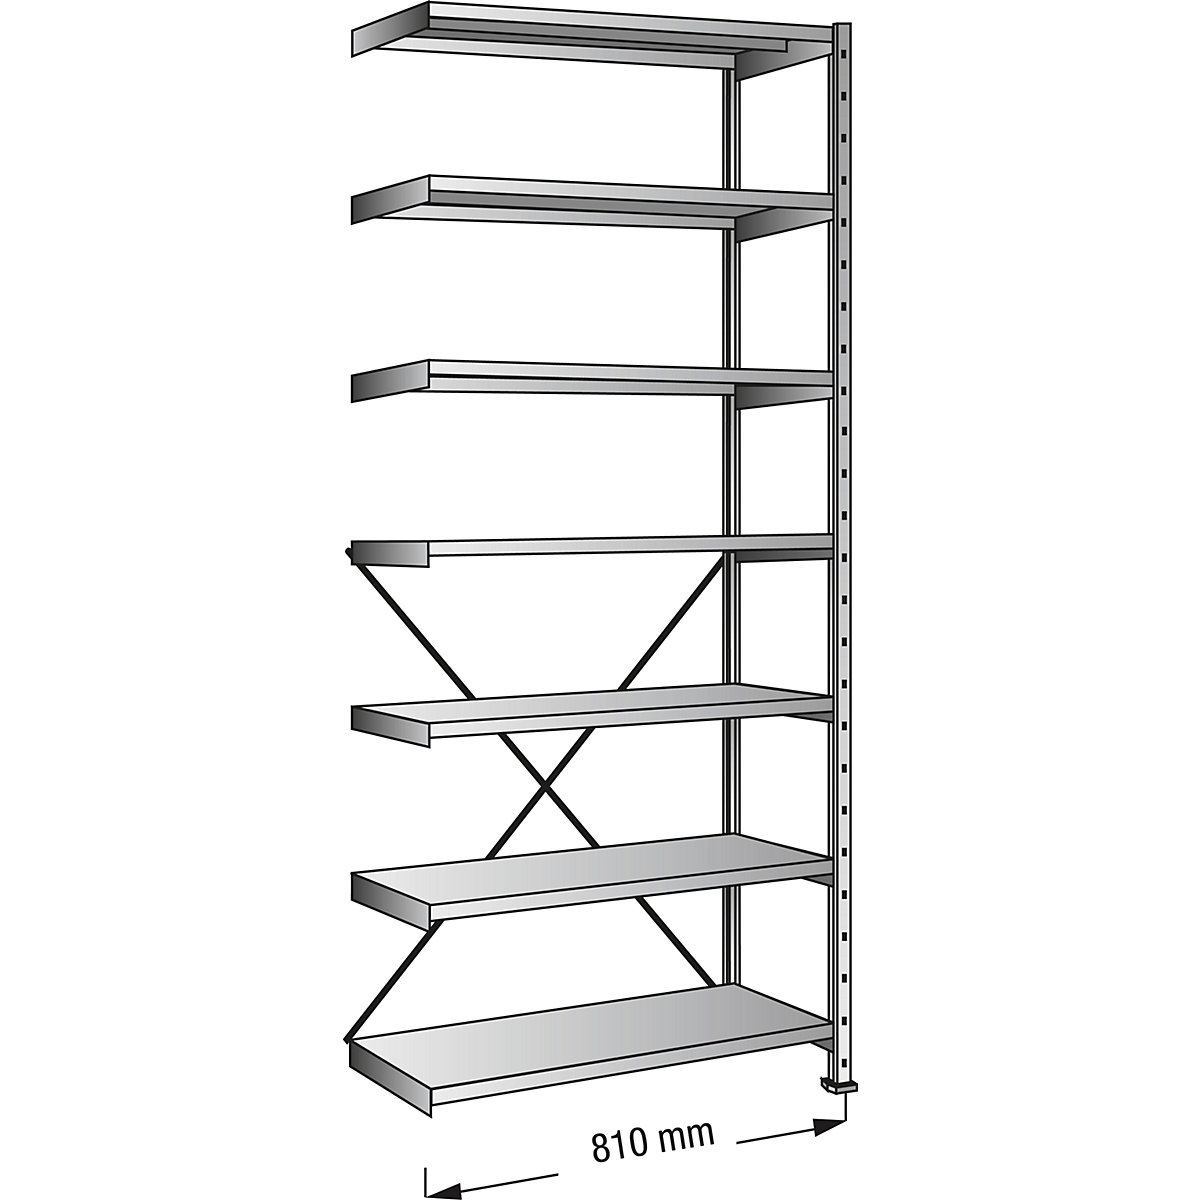 Boltless shelving unit, zinc plated, 7 shelves, height 2640 mm, shelf width 800 mm, depth 1000 mm, extension shelf unit